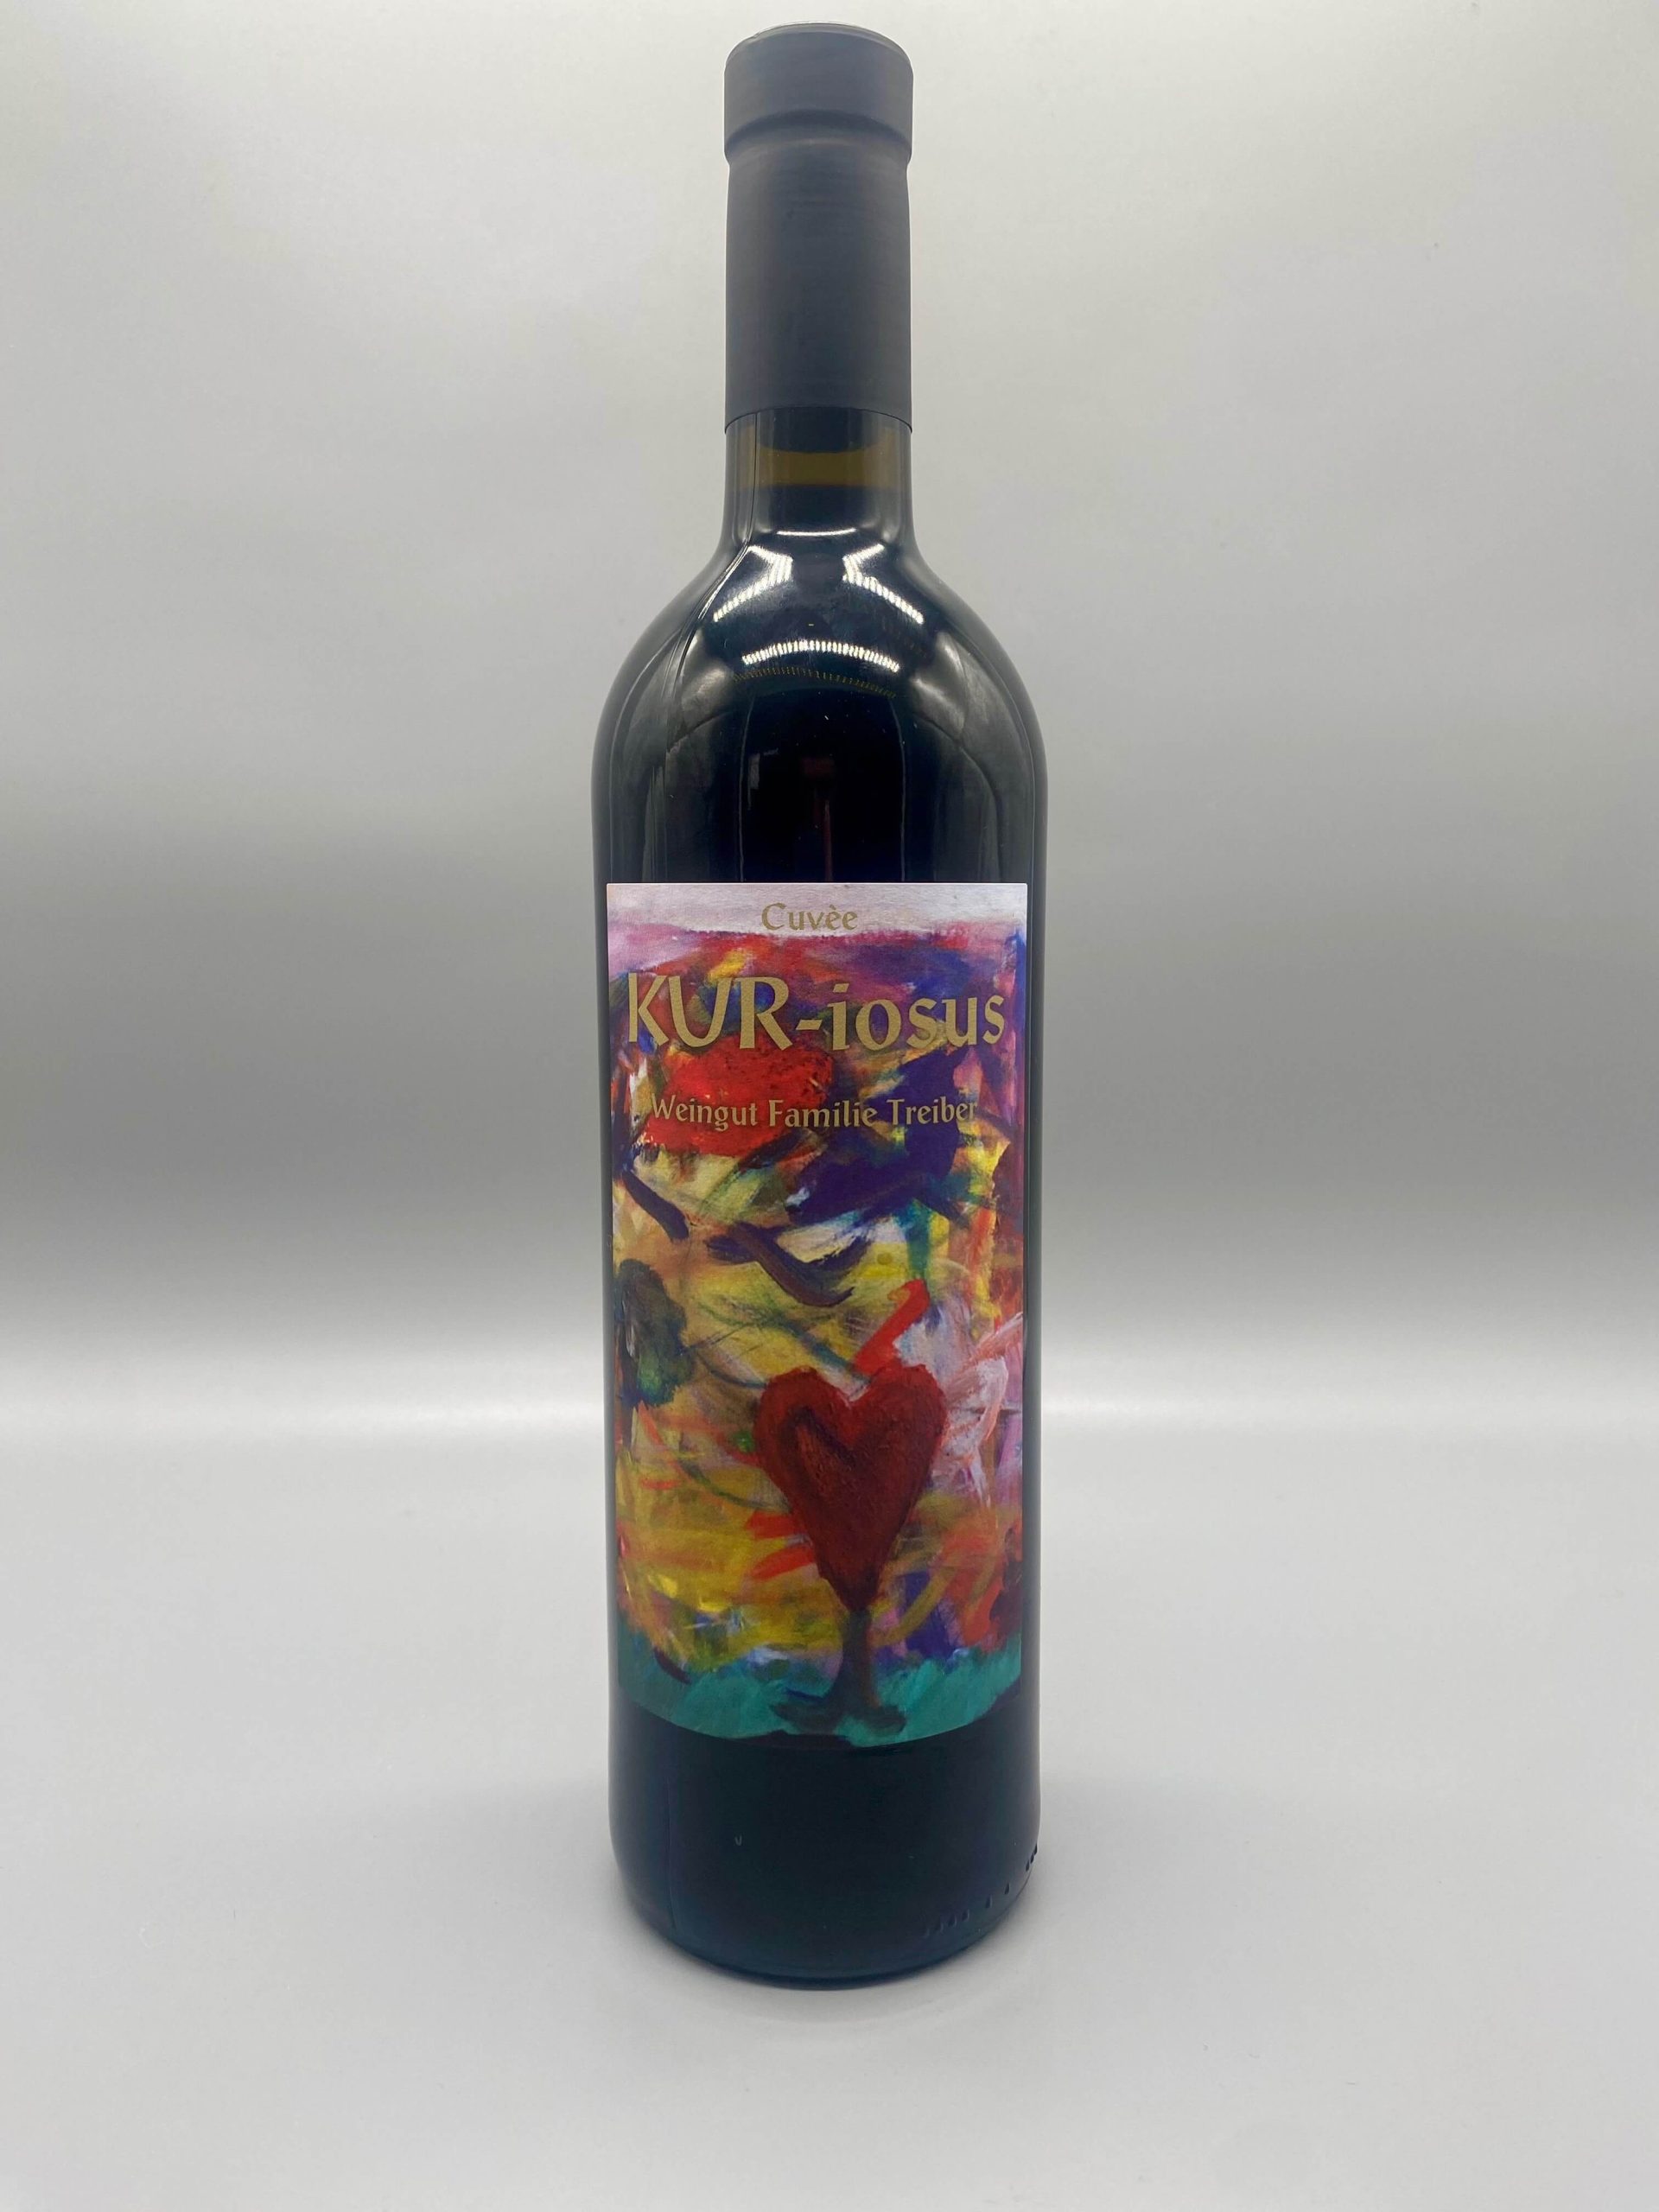 Flasche Rotwein Cuvée "KUR-iosus" von Weingut Familie Treiber mit buntem, abstraktem Herz auf dem Etikett.